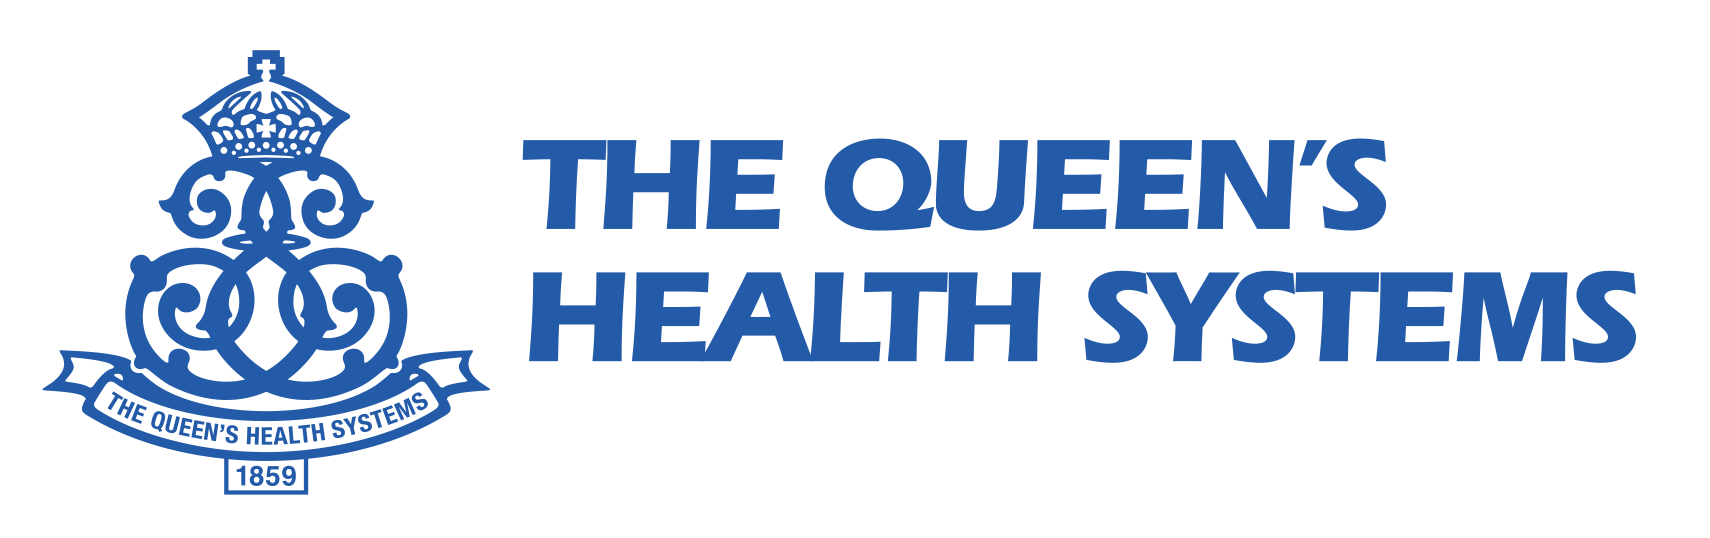 4. Los sistemas de salud de la reina (plata)